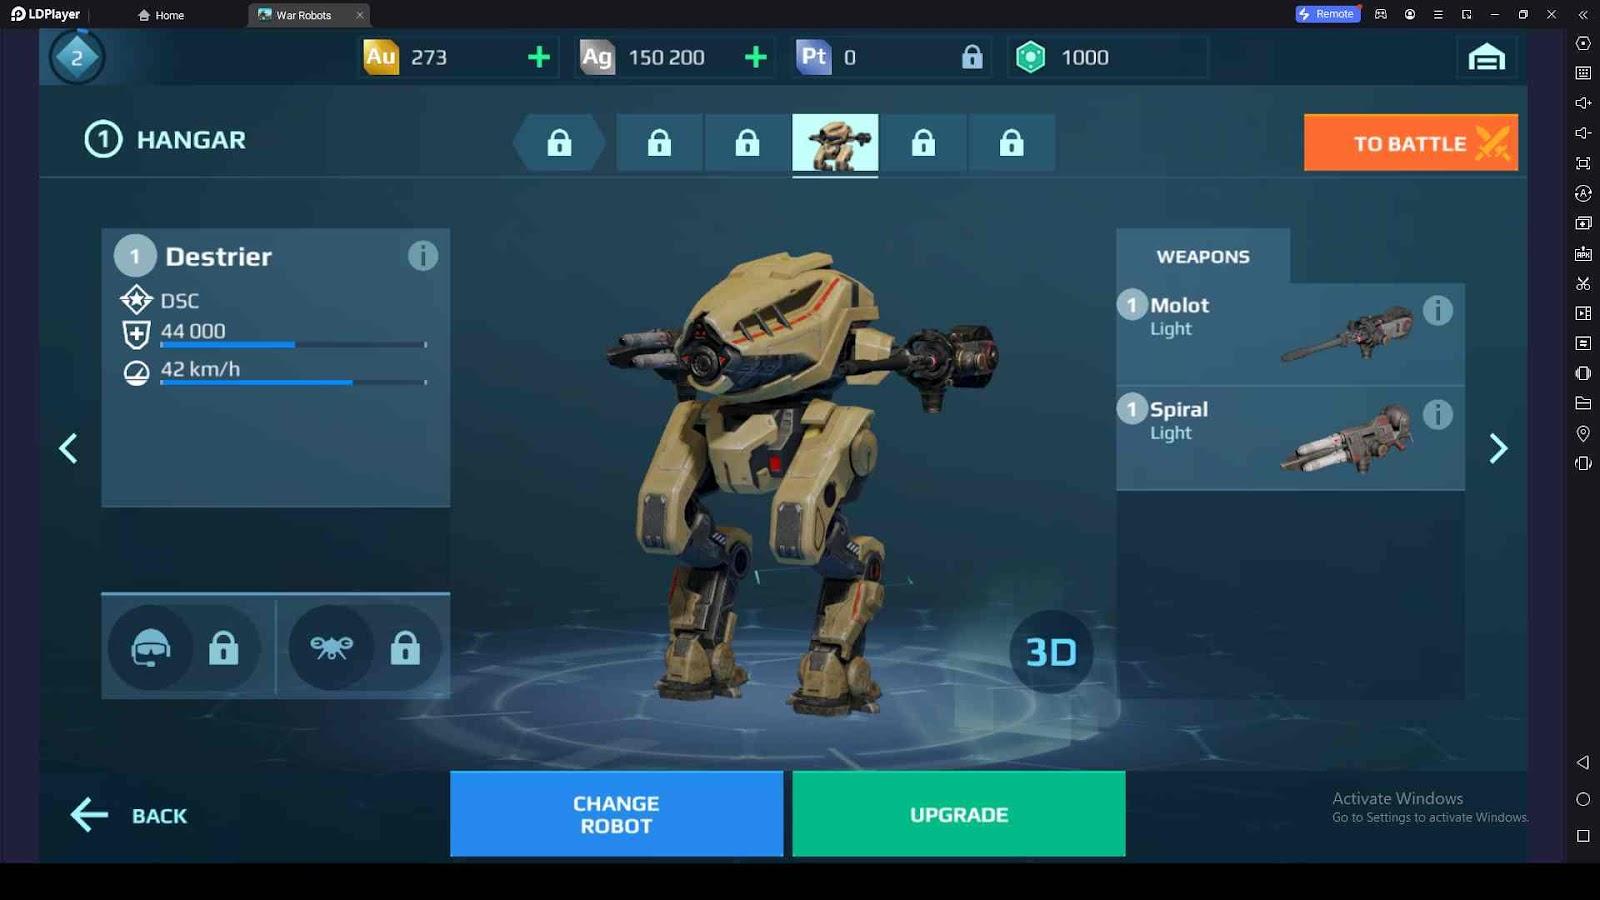 Upgrade the War Robots